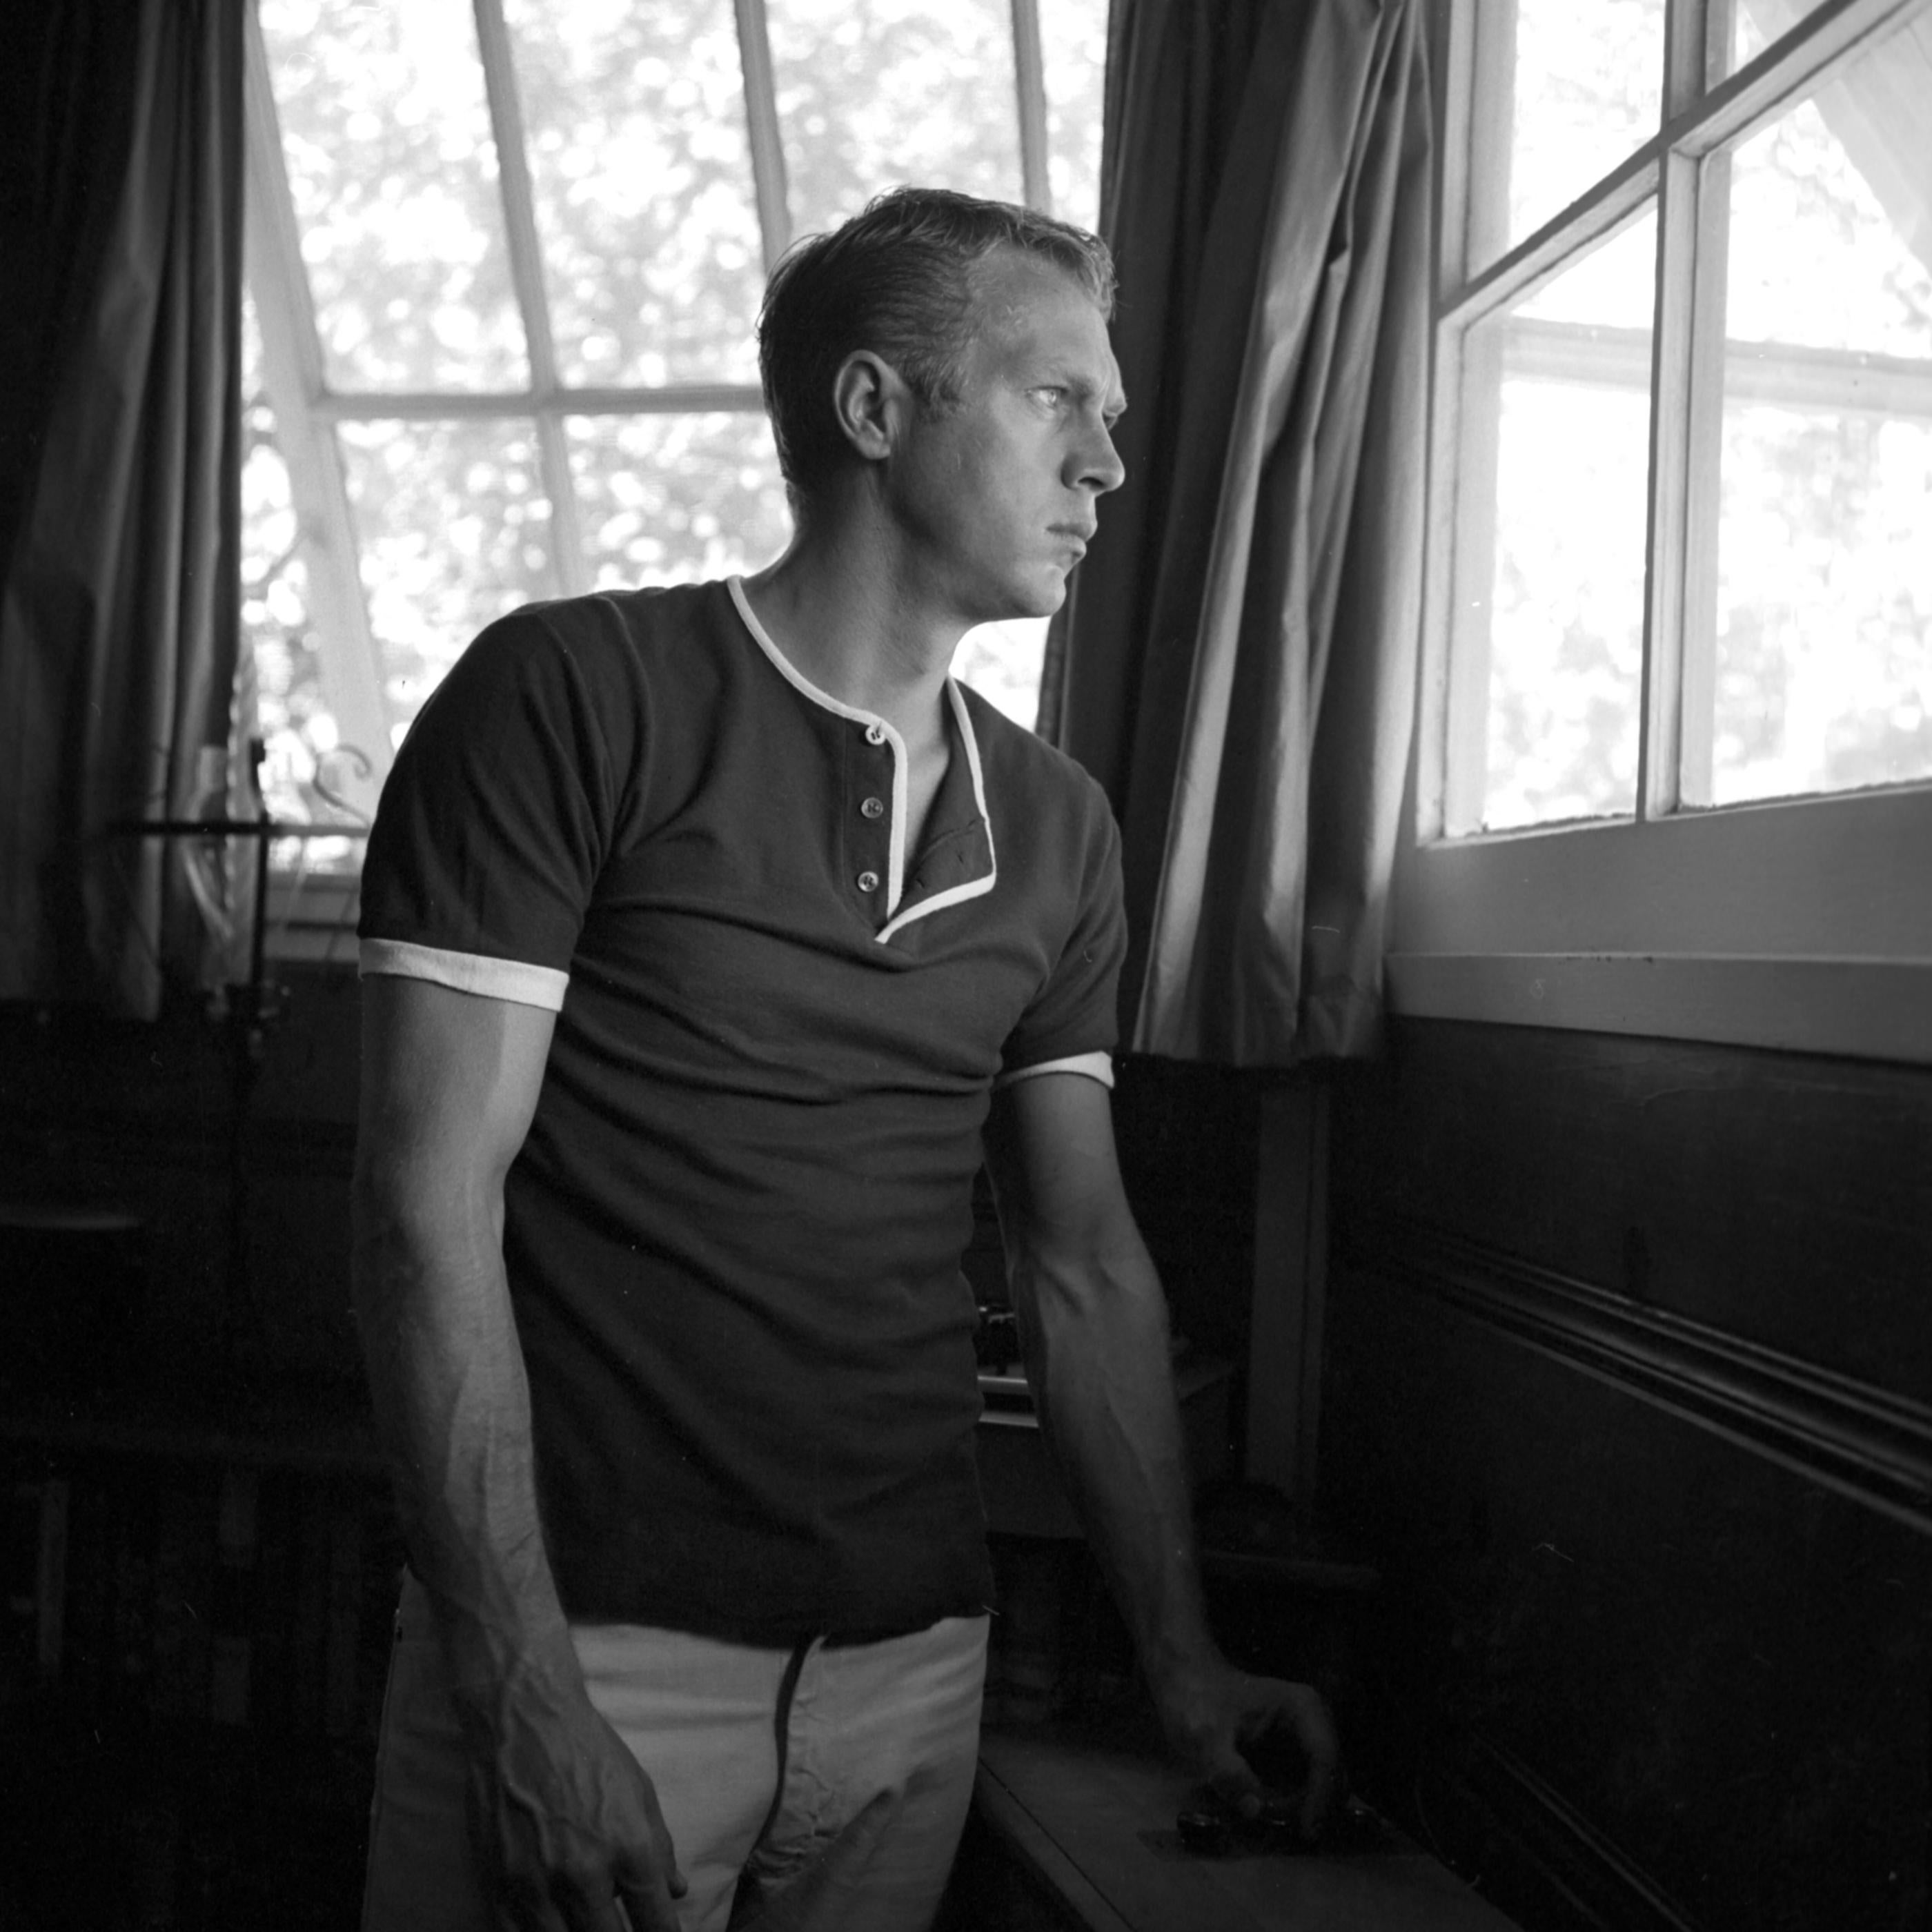 Unknown Portrait Photograph - Steve McQueen: A Windowlight Portrait